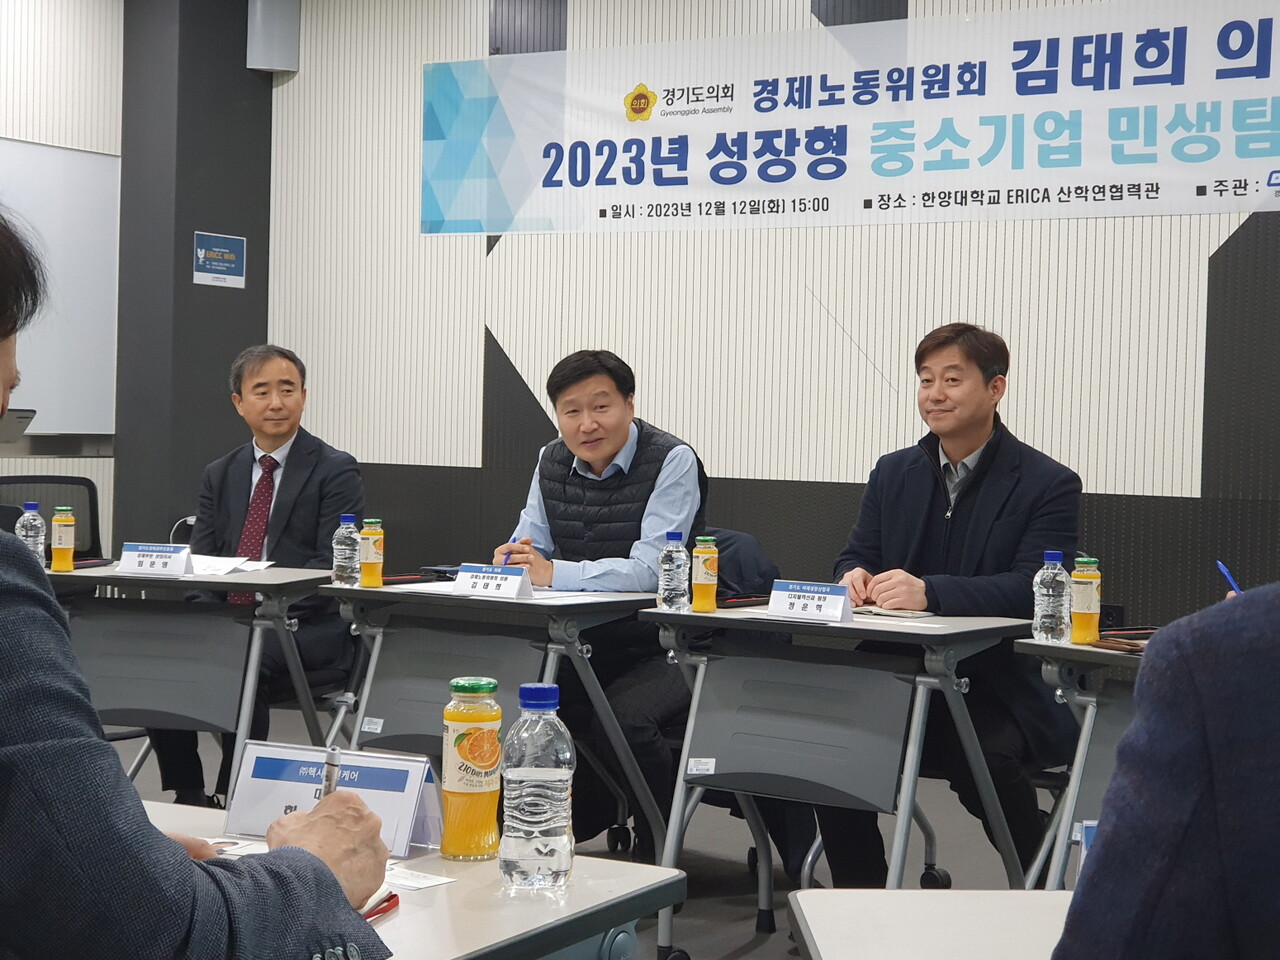 김태희 도의원(더불어민주당, 안산2)이 성장형 중소기업 간담회’에 참석하여 민생 현안을 청취했다